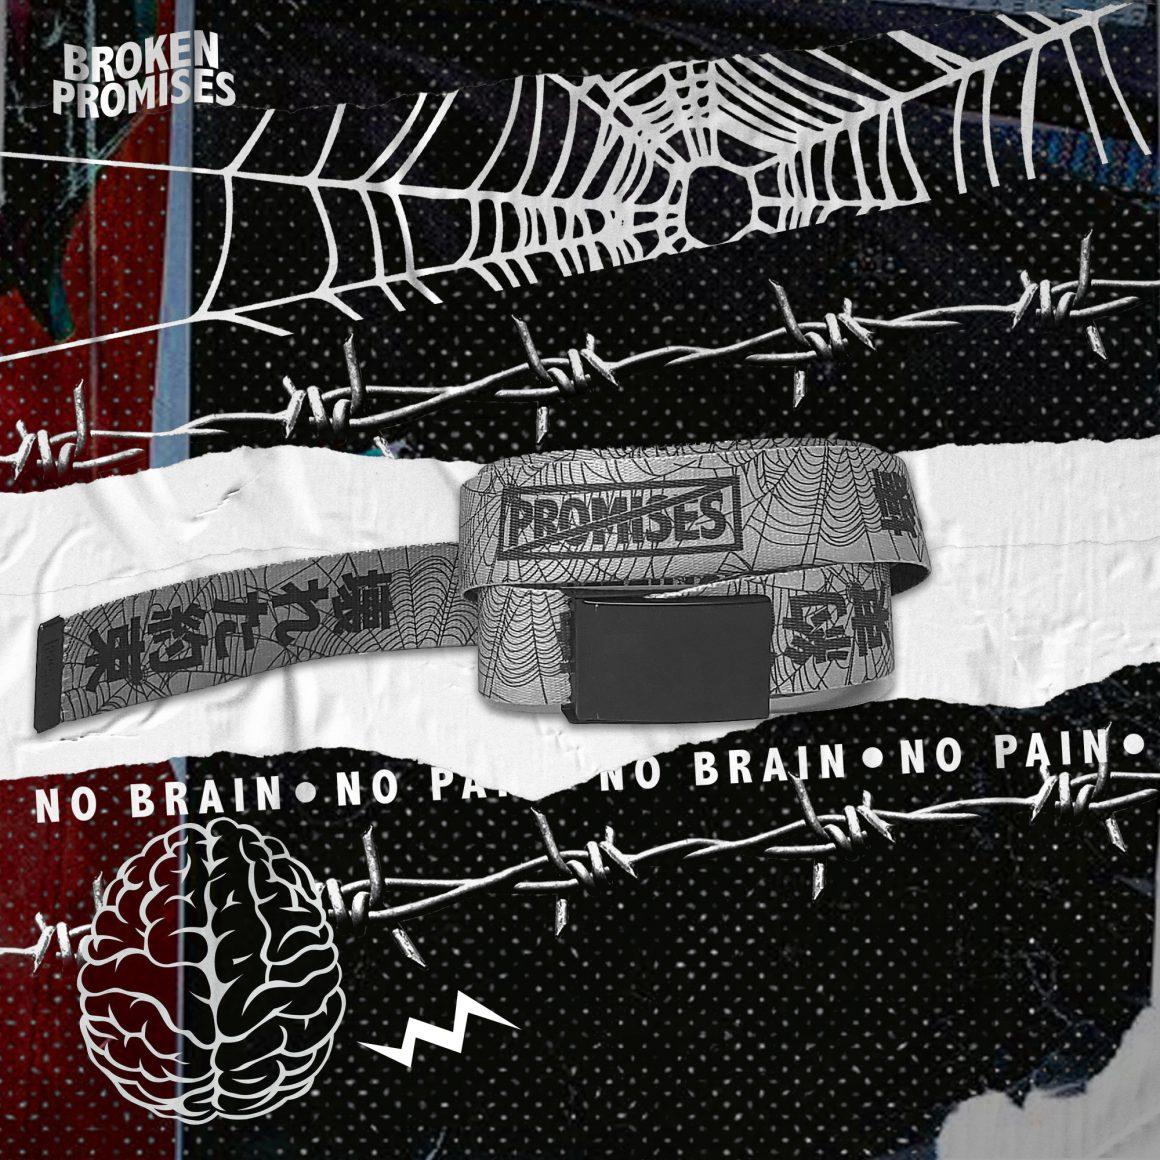 Broken Promises - No Brain No Pain